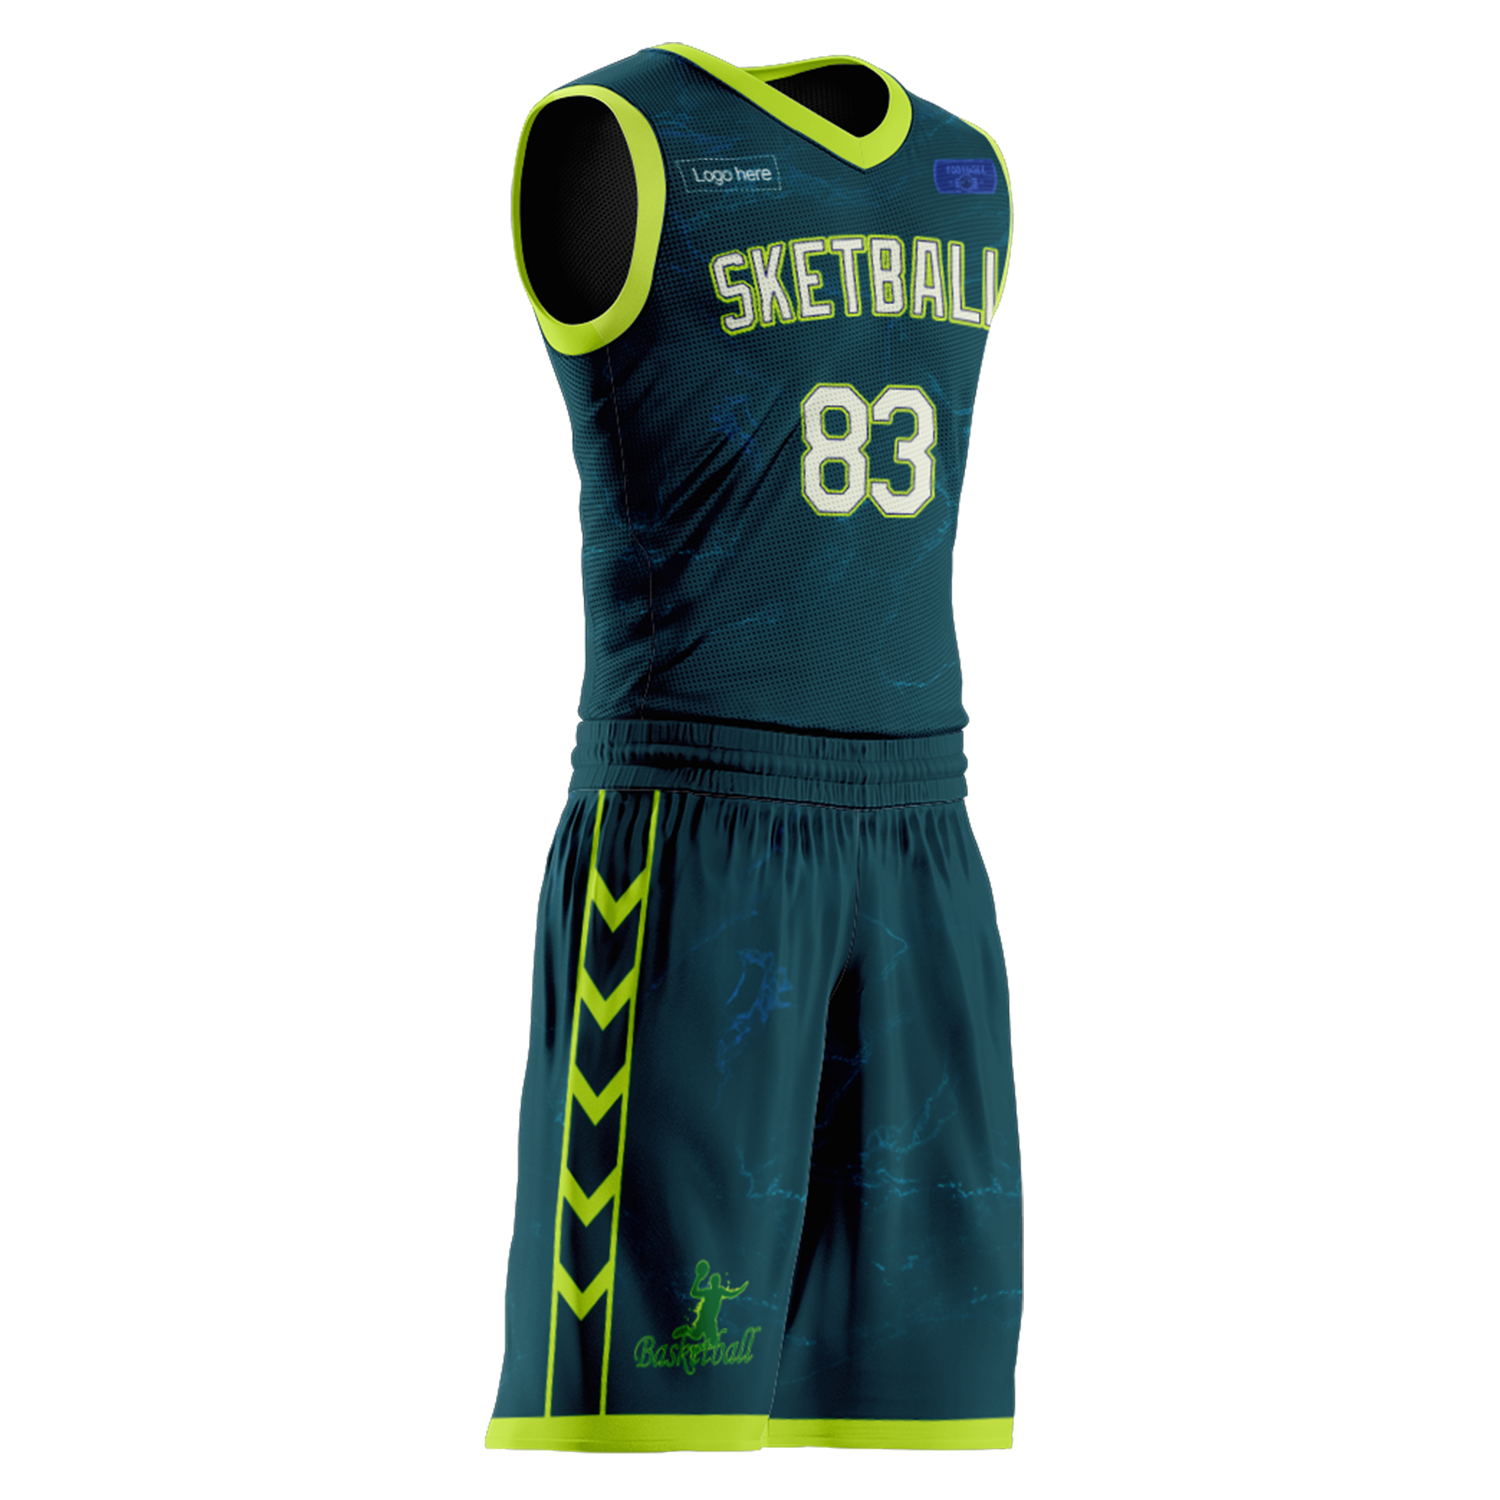 Ternos personalizados de basquete da equipe australiana